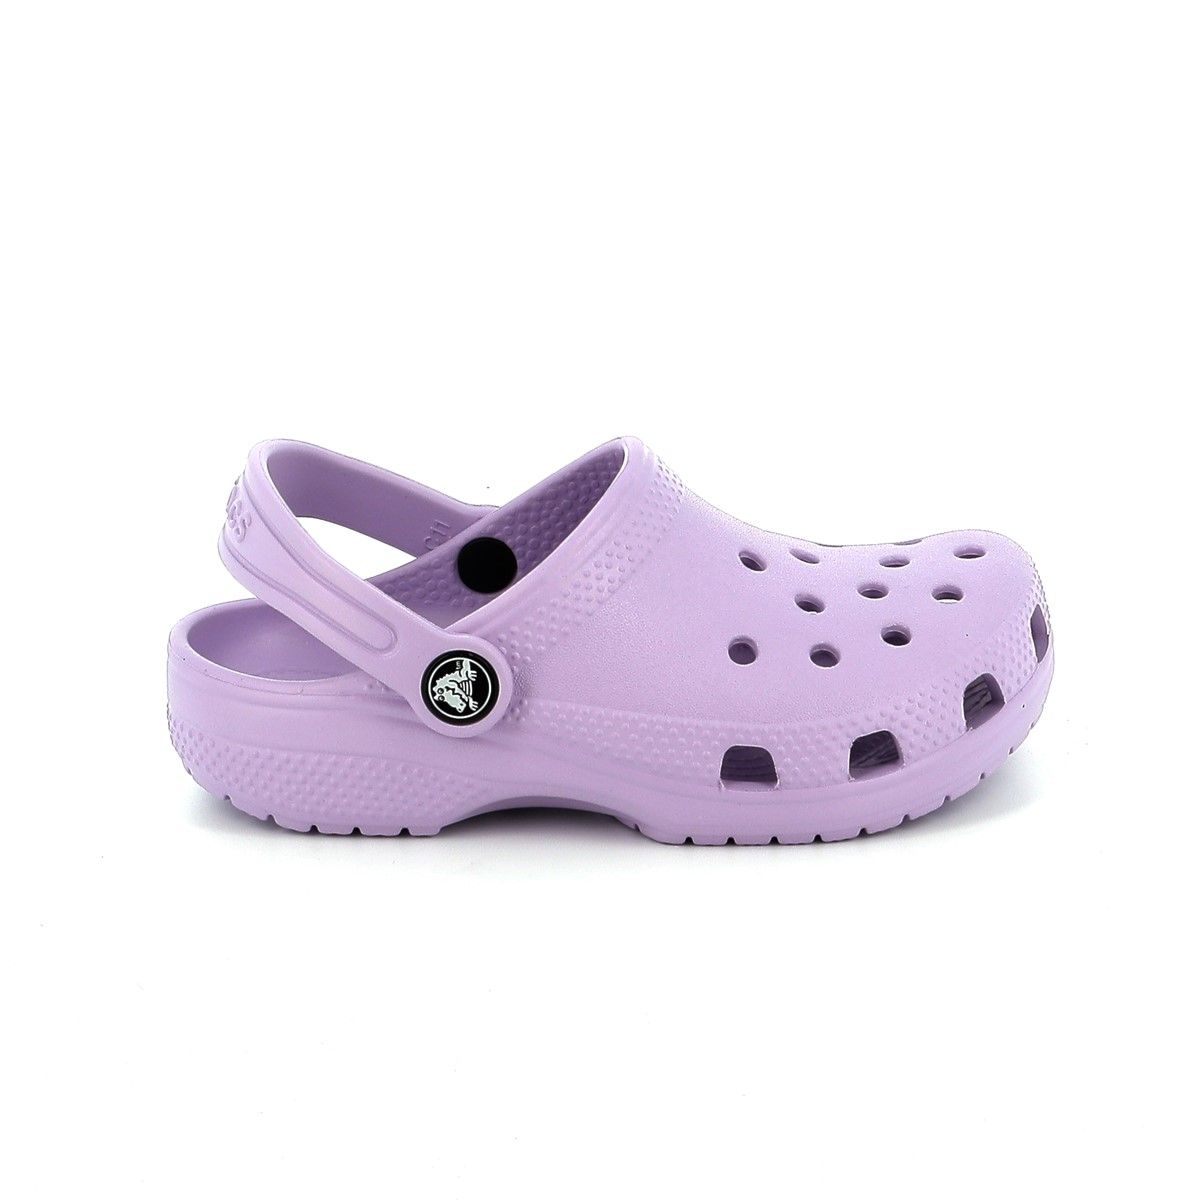 Παιδικό Σαμπό για Κορίτσι Crocs Classic Clog T Χρώματος Ανατομικό Μωβ 206991-530